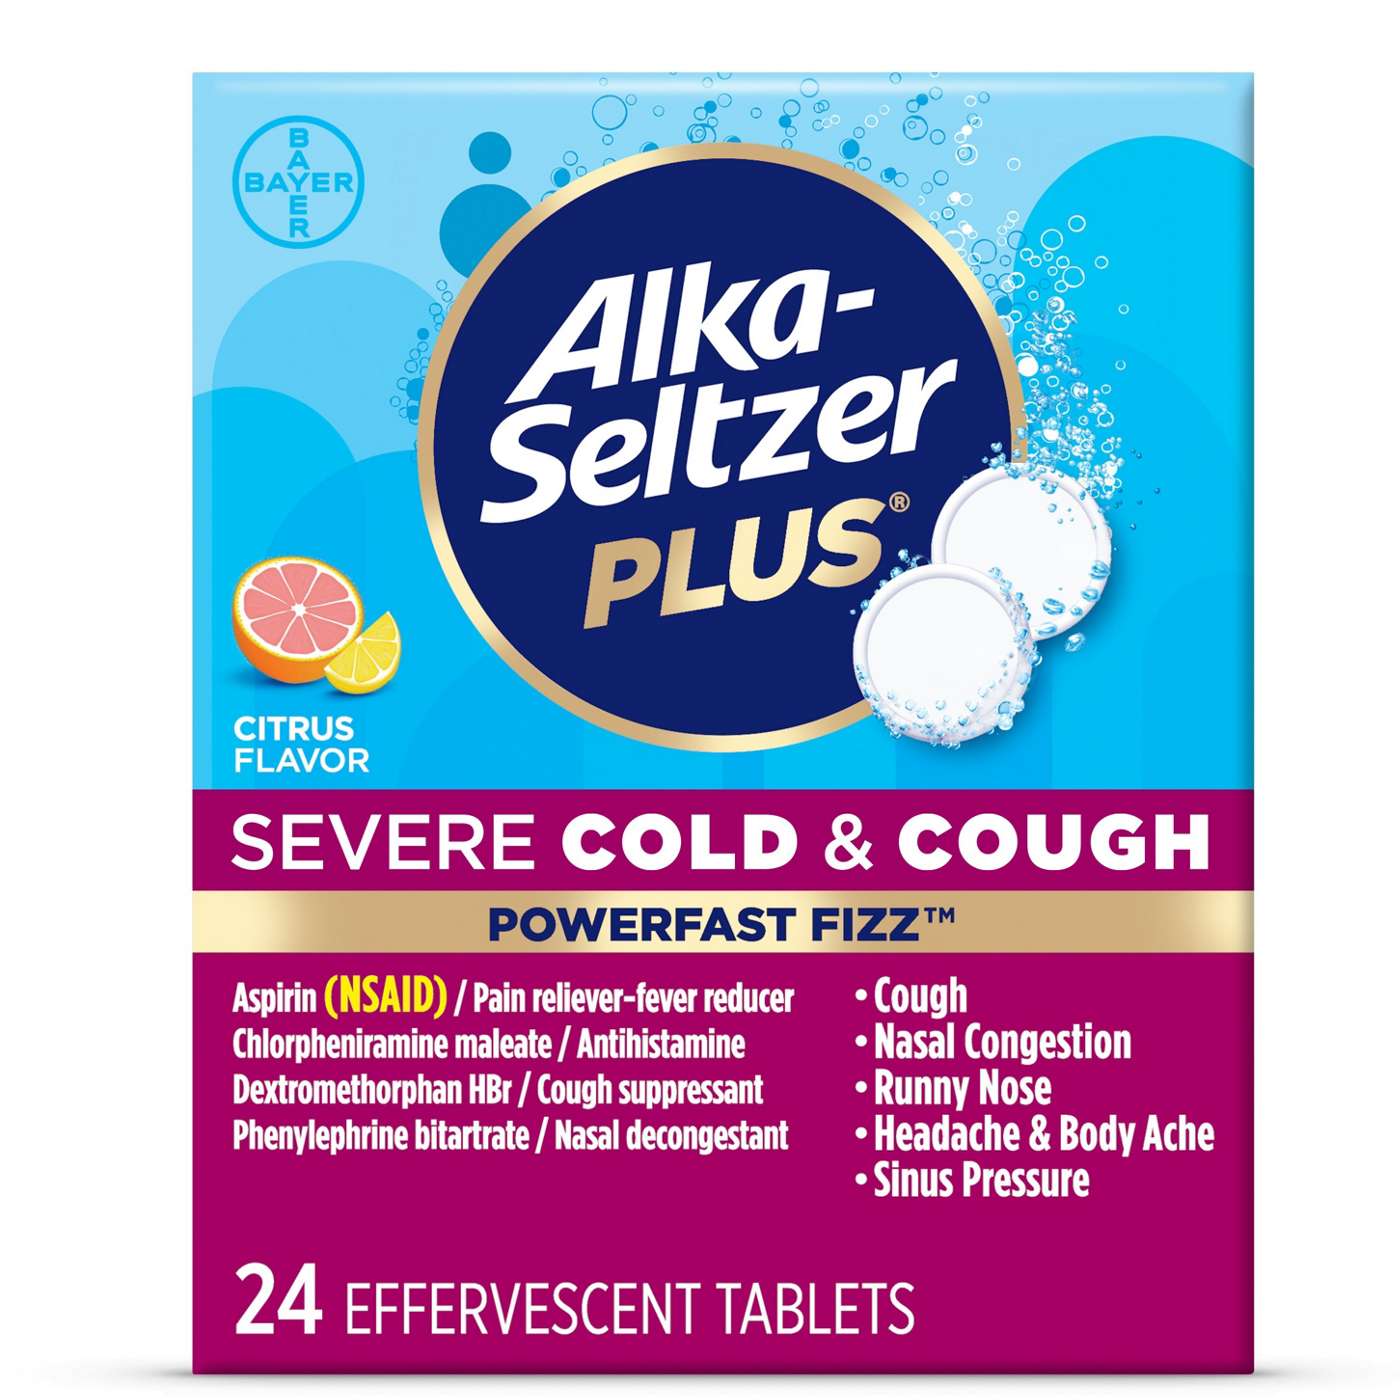 Alka-Seltzer Plus Severe Cold & Cough Powerfast Fizz Tablets - Citrus; image 1 of 6